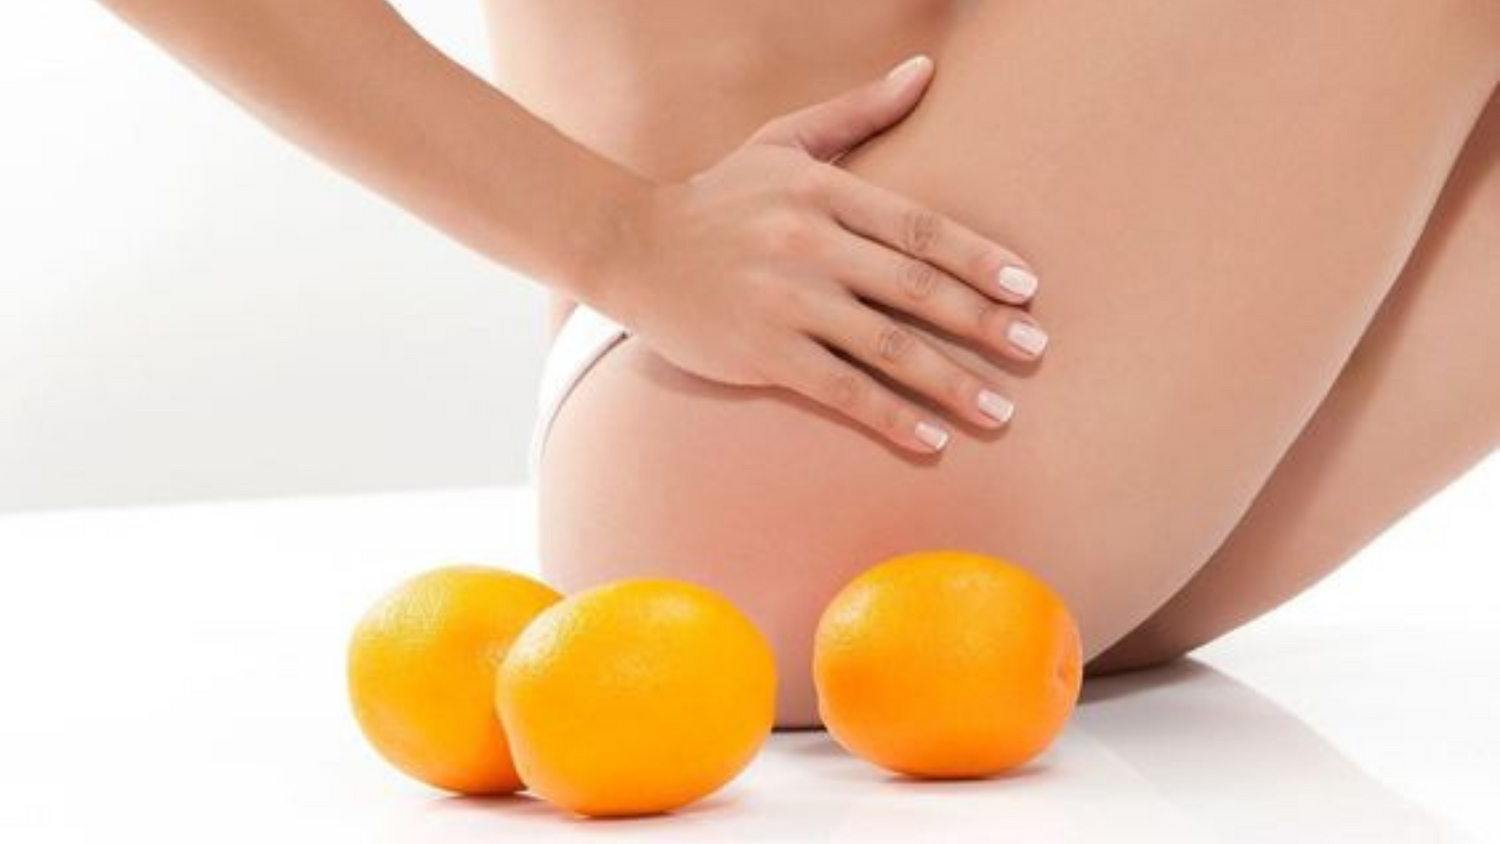 femme se touchant les cuisses assise à côté de 3 oranges, faisant référence à la peau d'orange qui est l'aspect de la peau donné par la cellulite